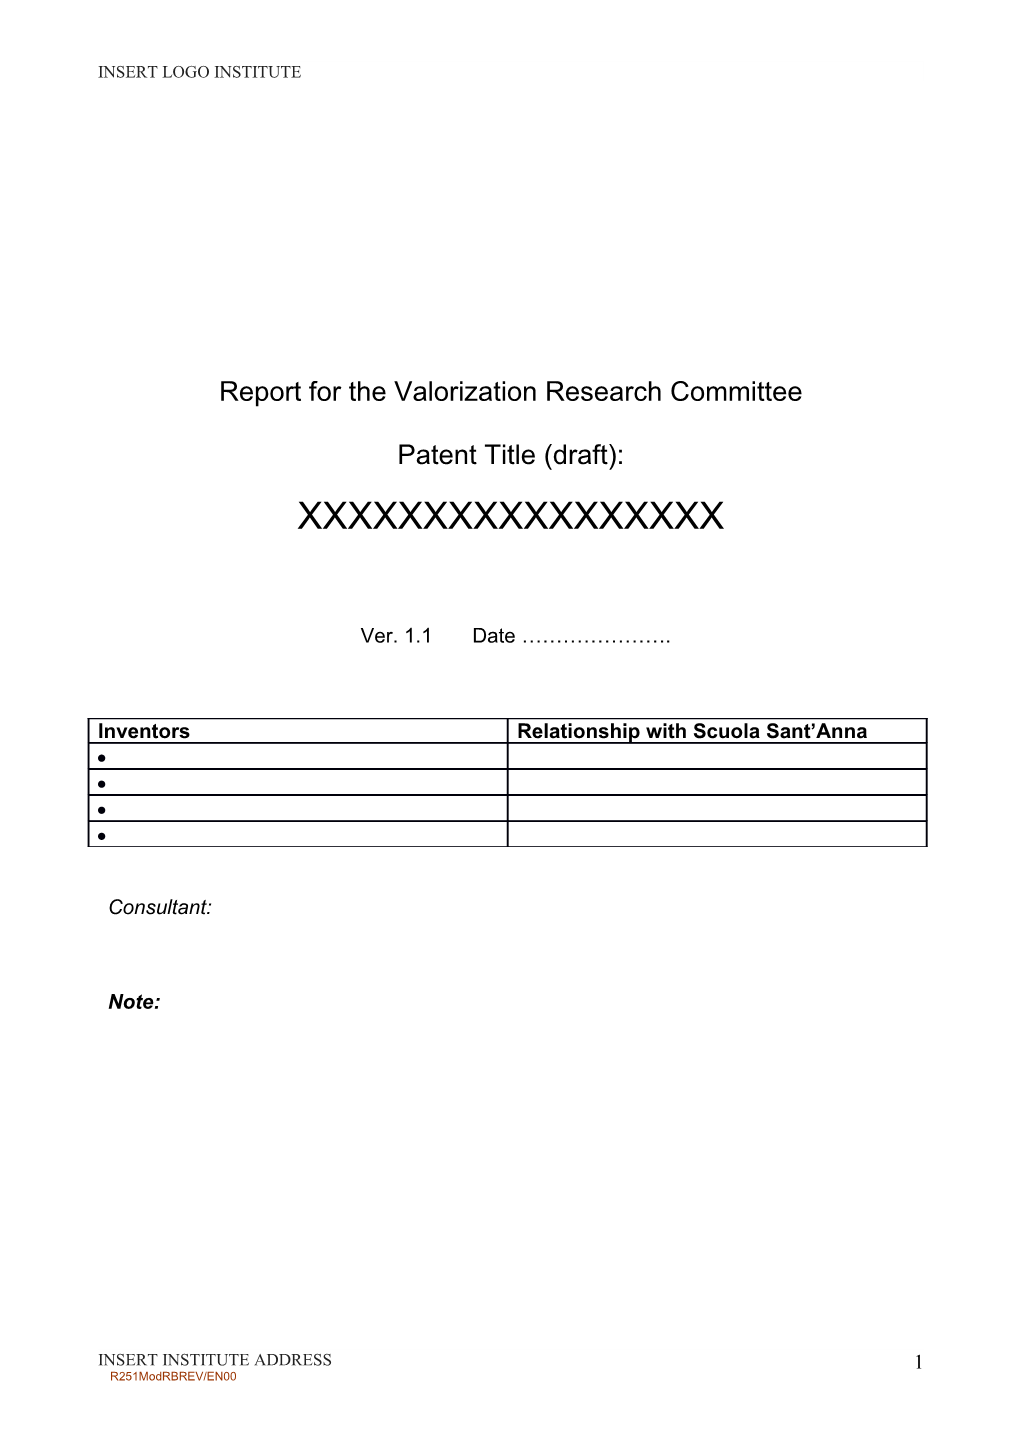 Relazione Per Il Comitato Valorizzazione Ricerche